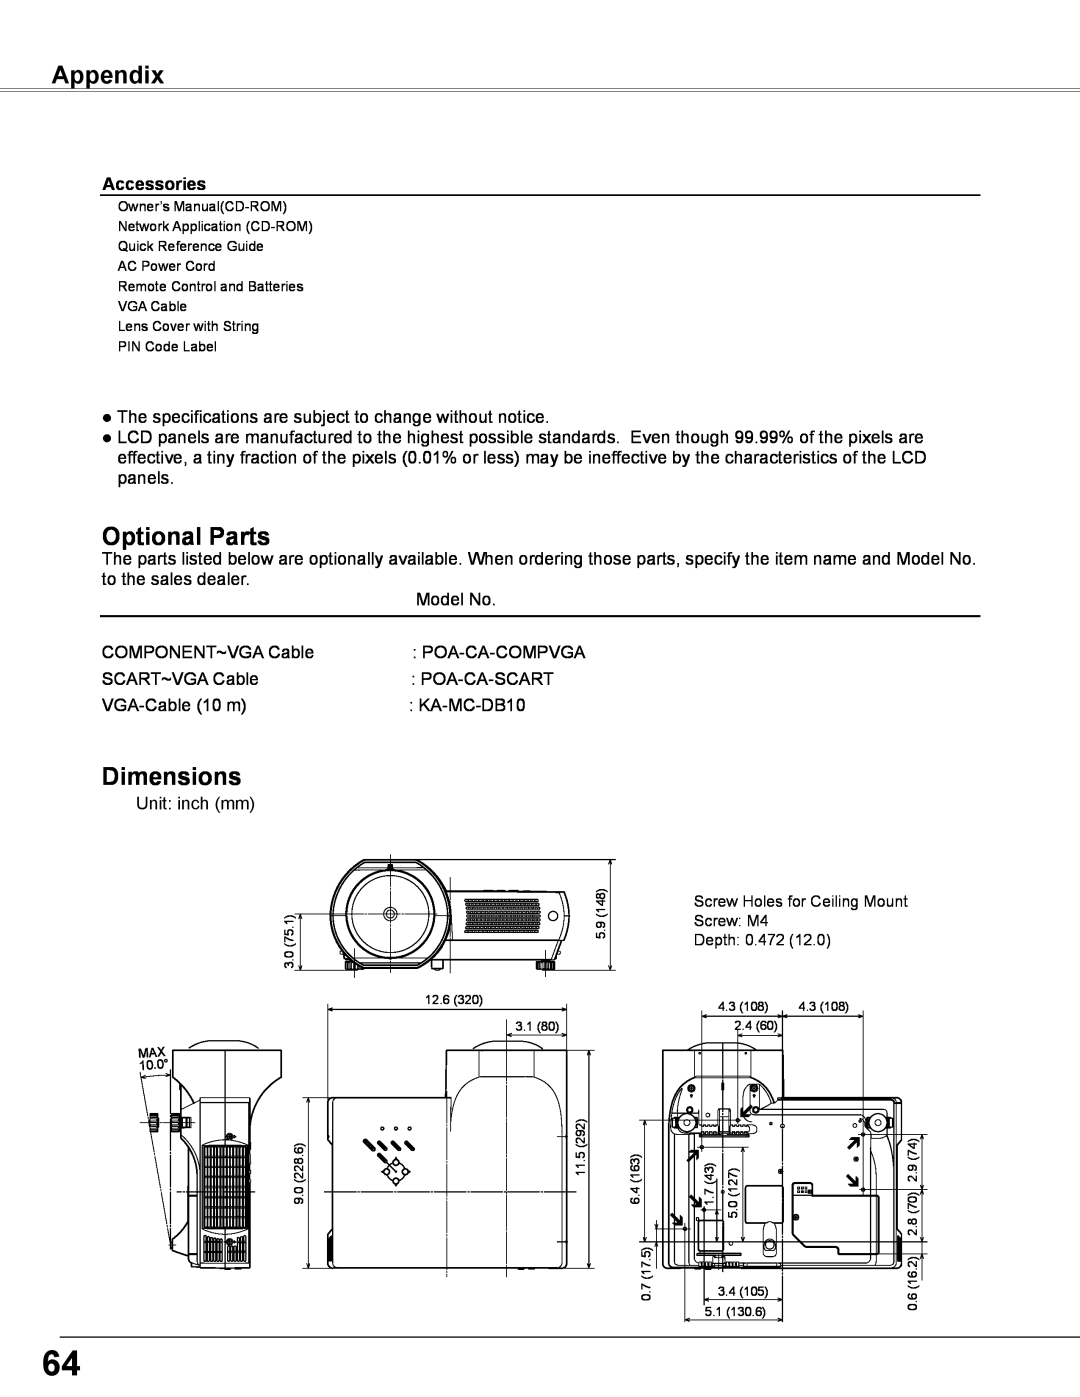 Sanyo PLC-WXL46 owner manual Optional Parts, Dimensions, Appendix, Accessories 